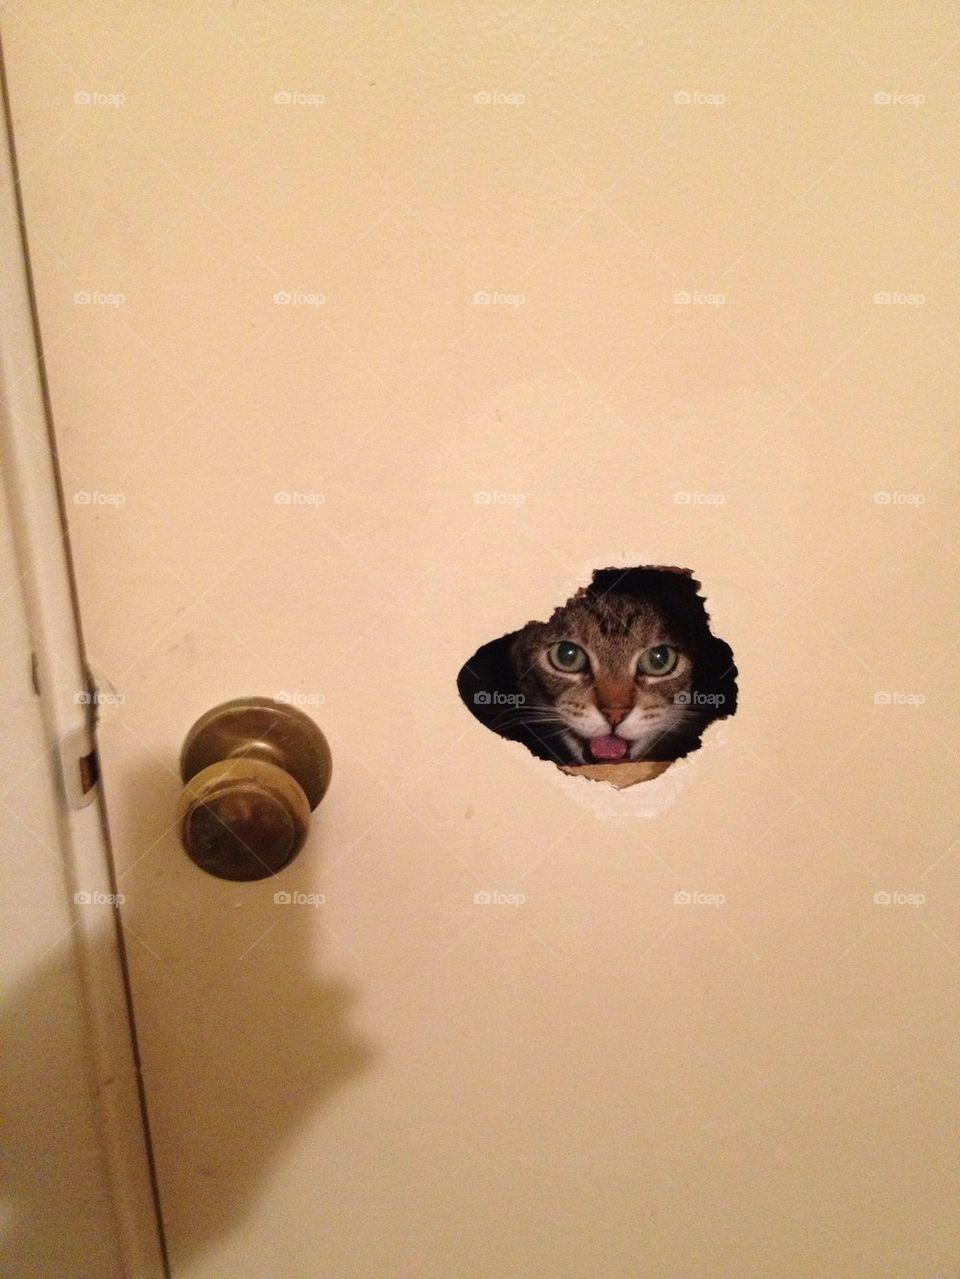  Cat in a door hole